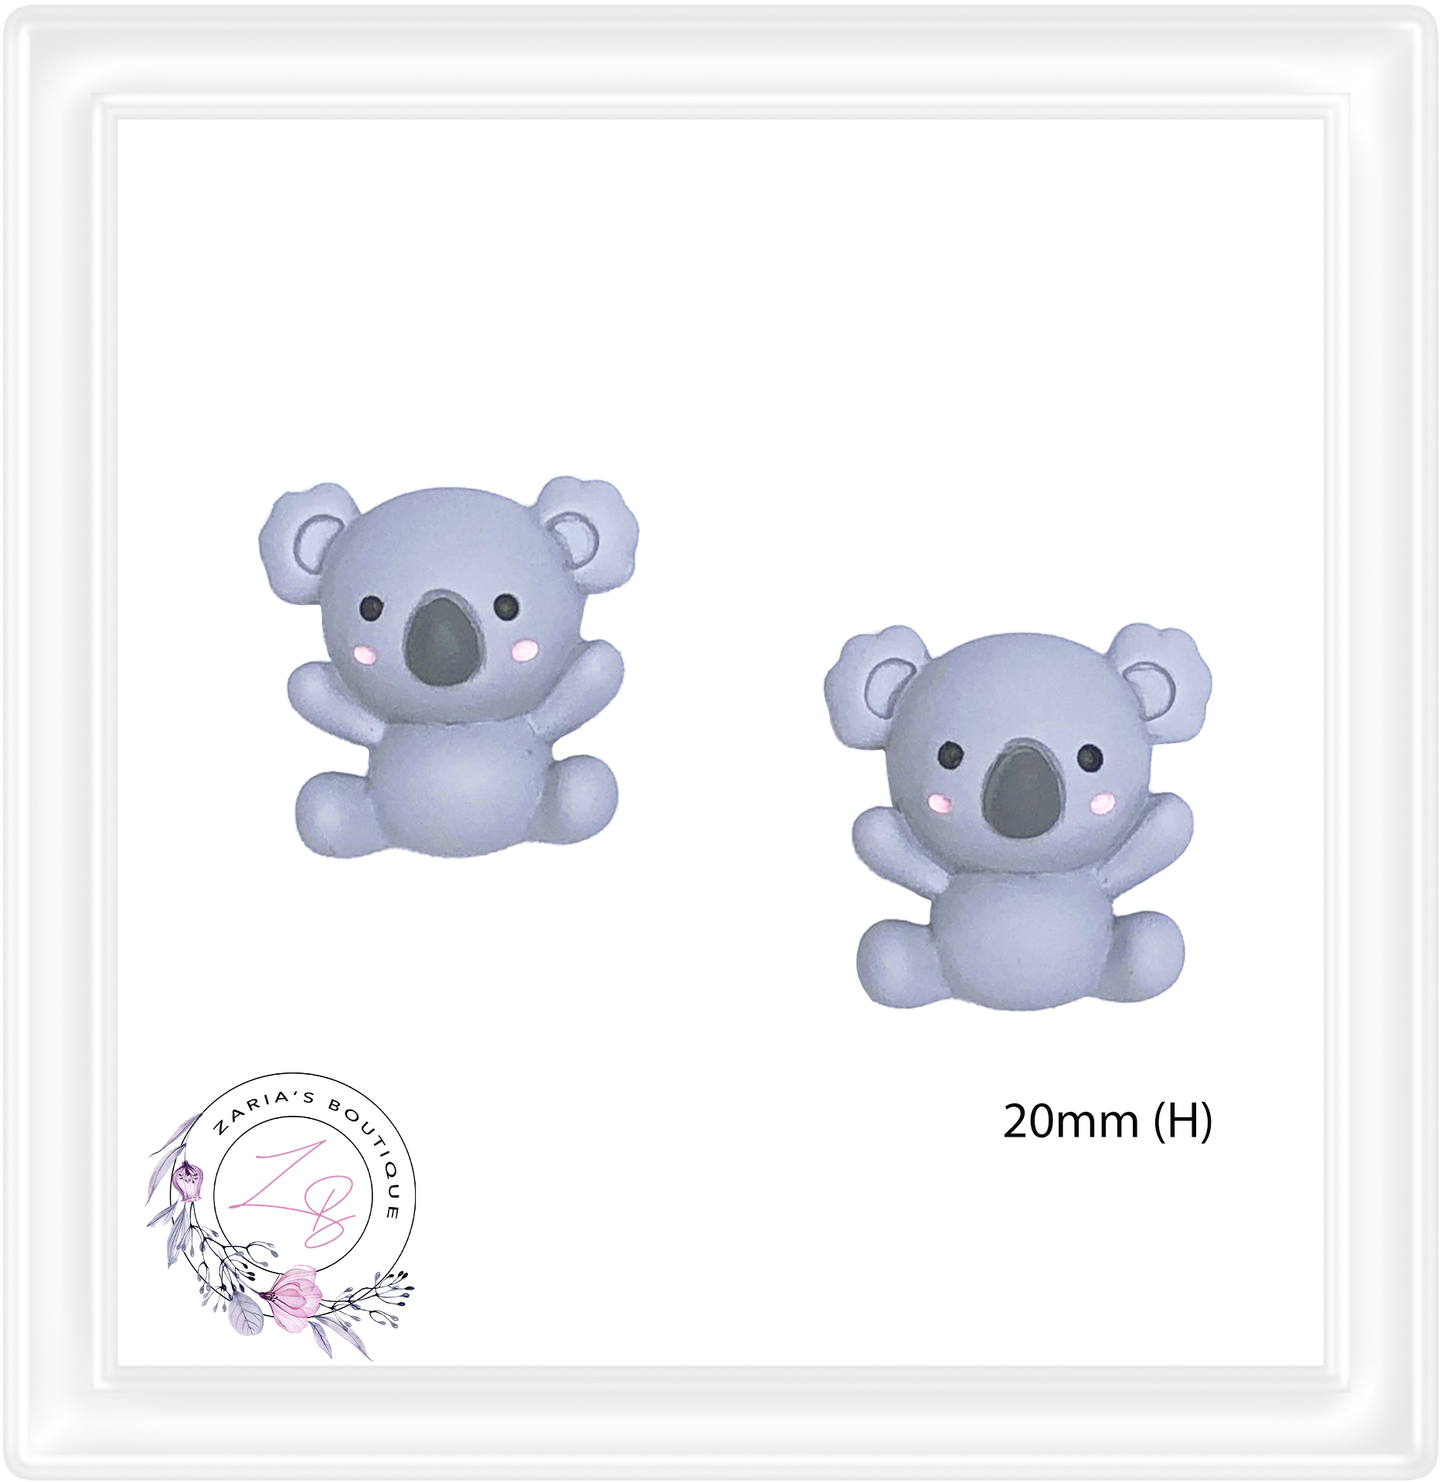 ⋅ Cuddly Koalas ⋅ Flatback Resin Koala Embellishments ⋅ 2 pieces